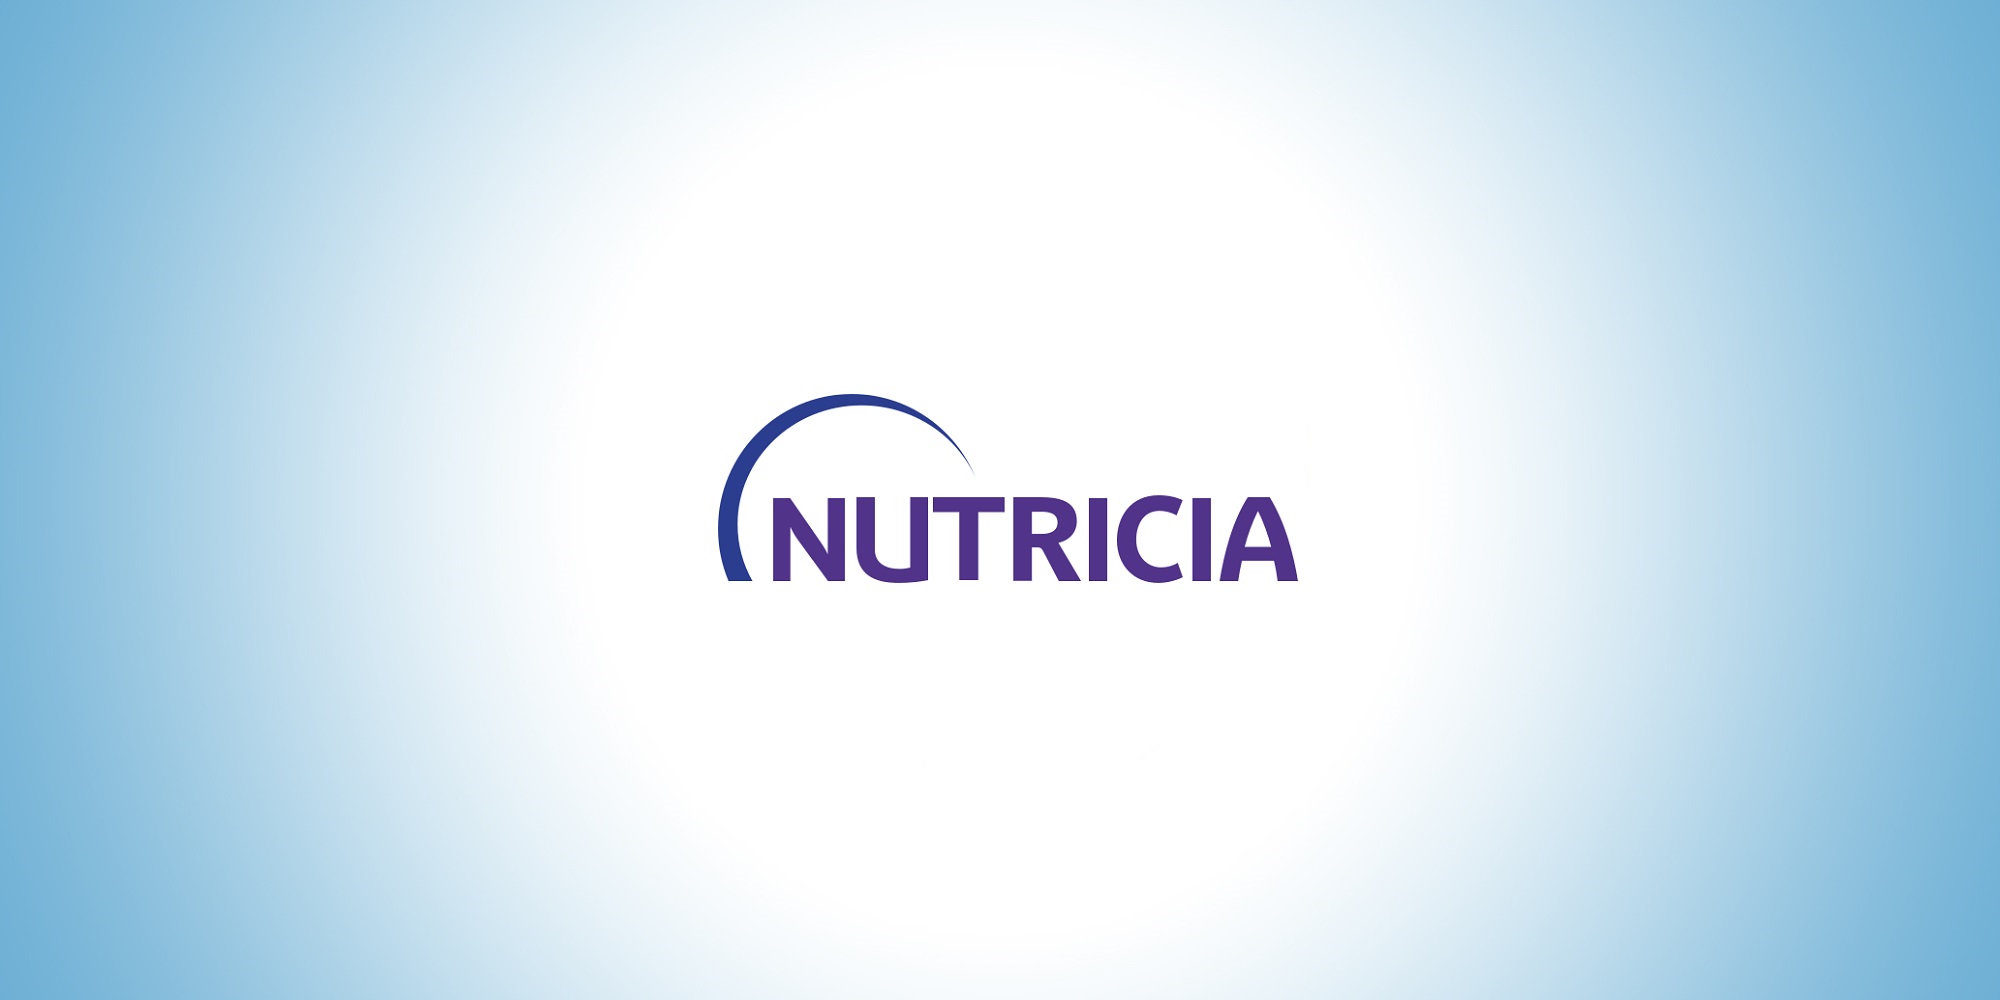 nutricia-logo-header.jpg